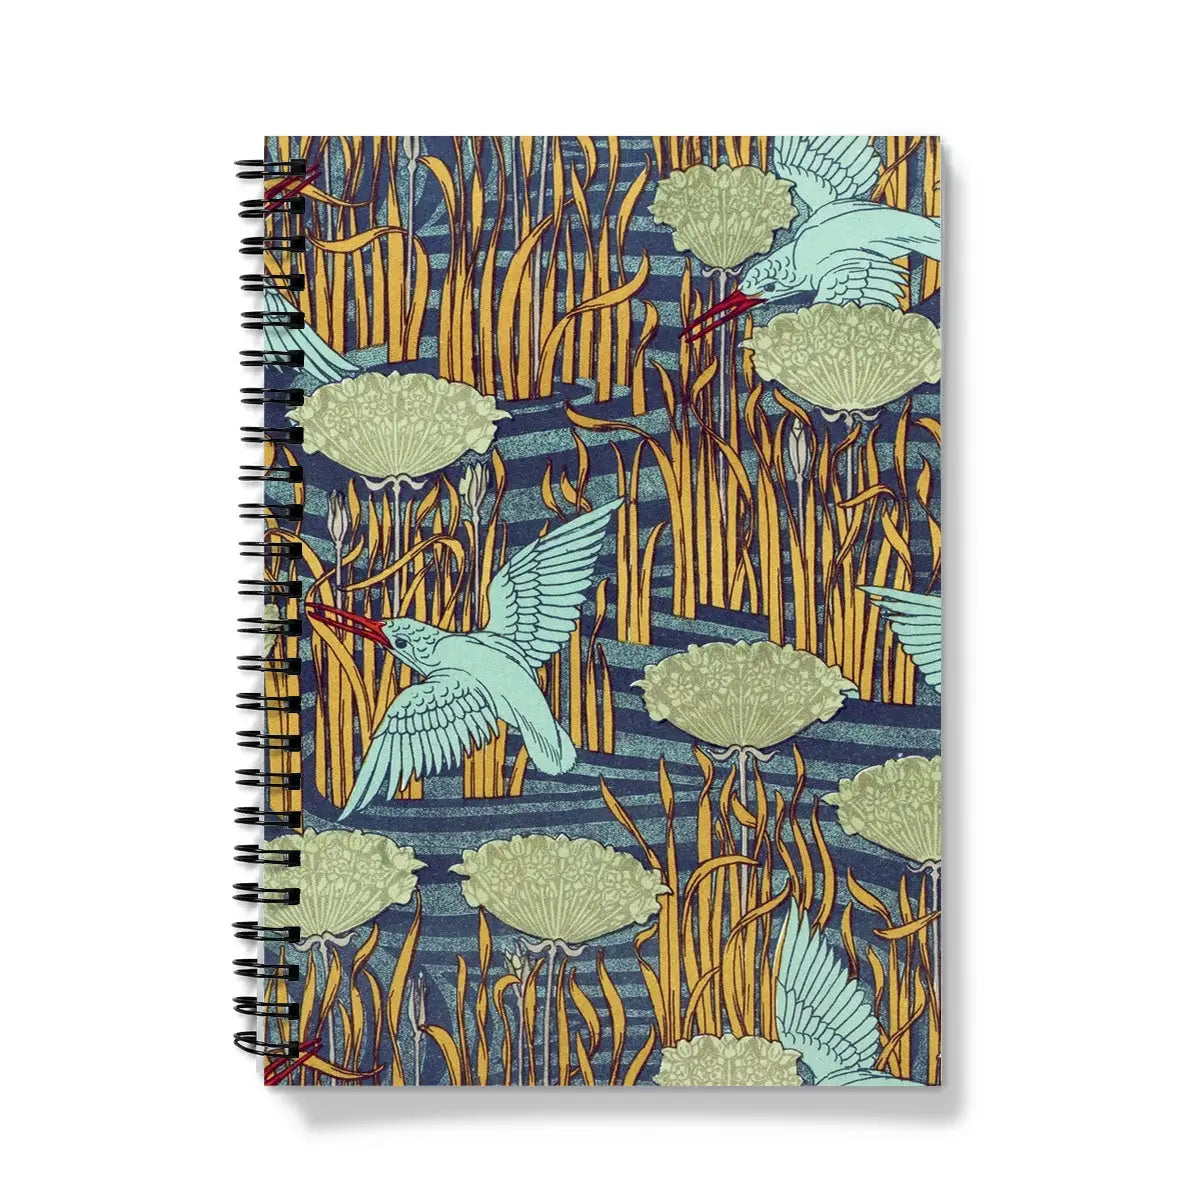 Martins-pêcheurs - Maurice Pillard Verneuil Notebook - A5 - Graph Paper - Notebooks & Notepads - Aesthetic Art